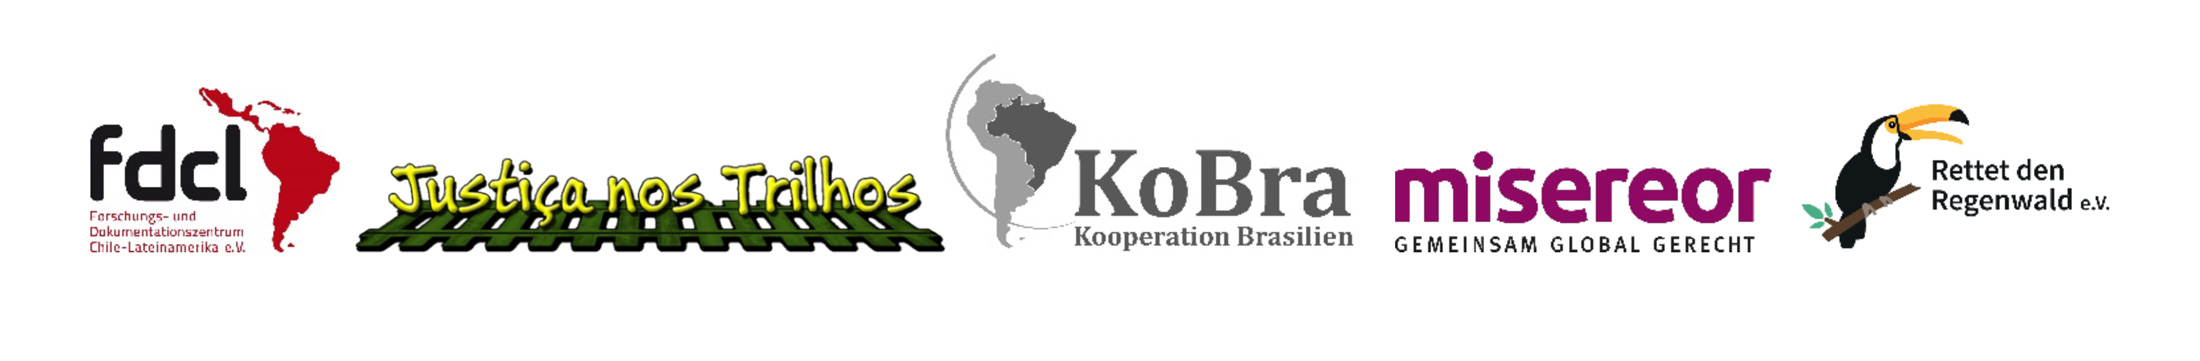 Logos NGOs gegen Bahnprojekt in Brasilien